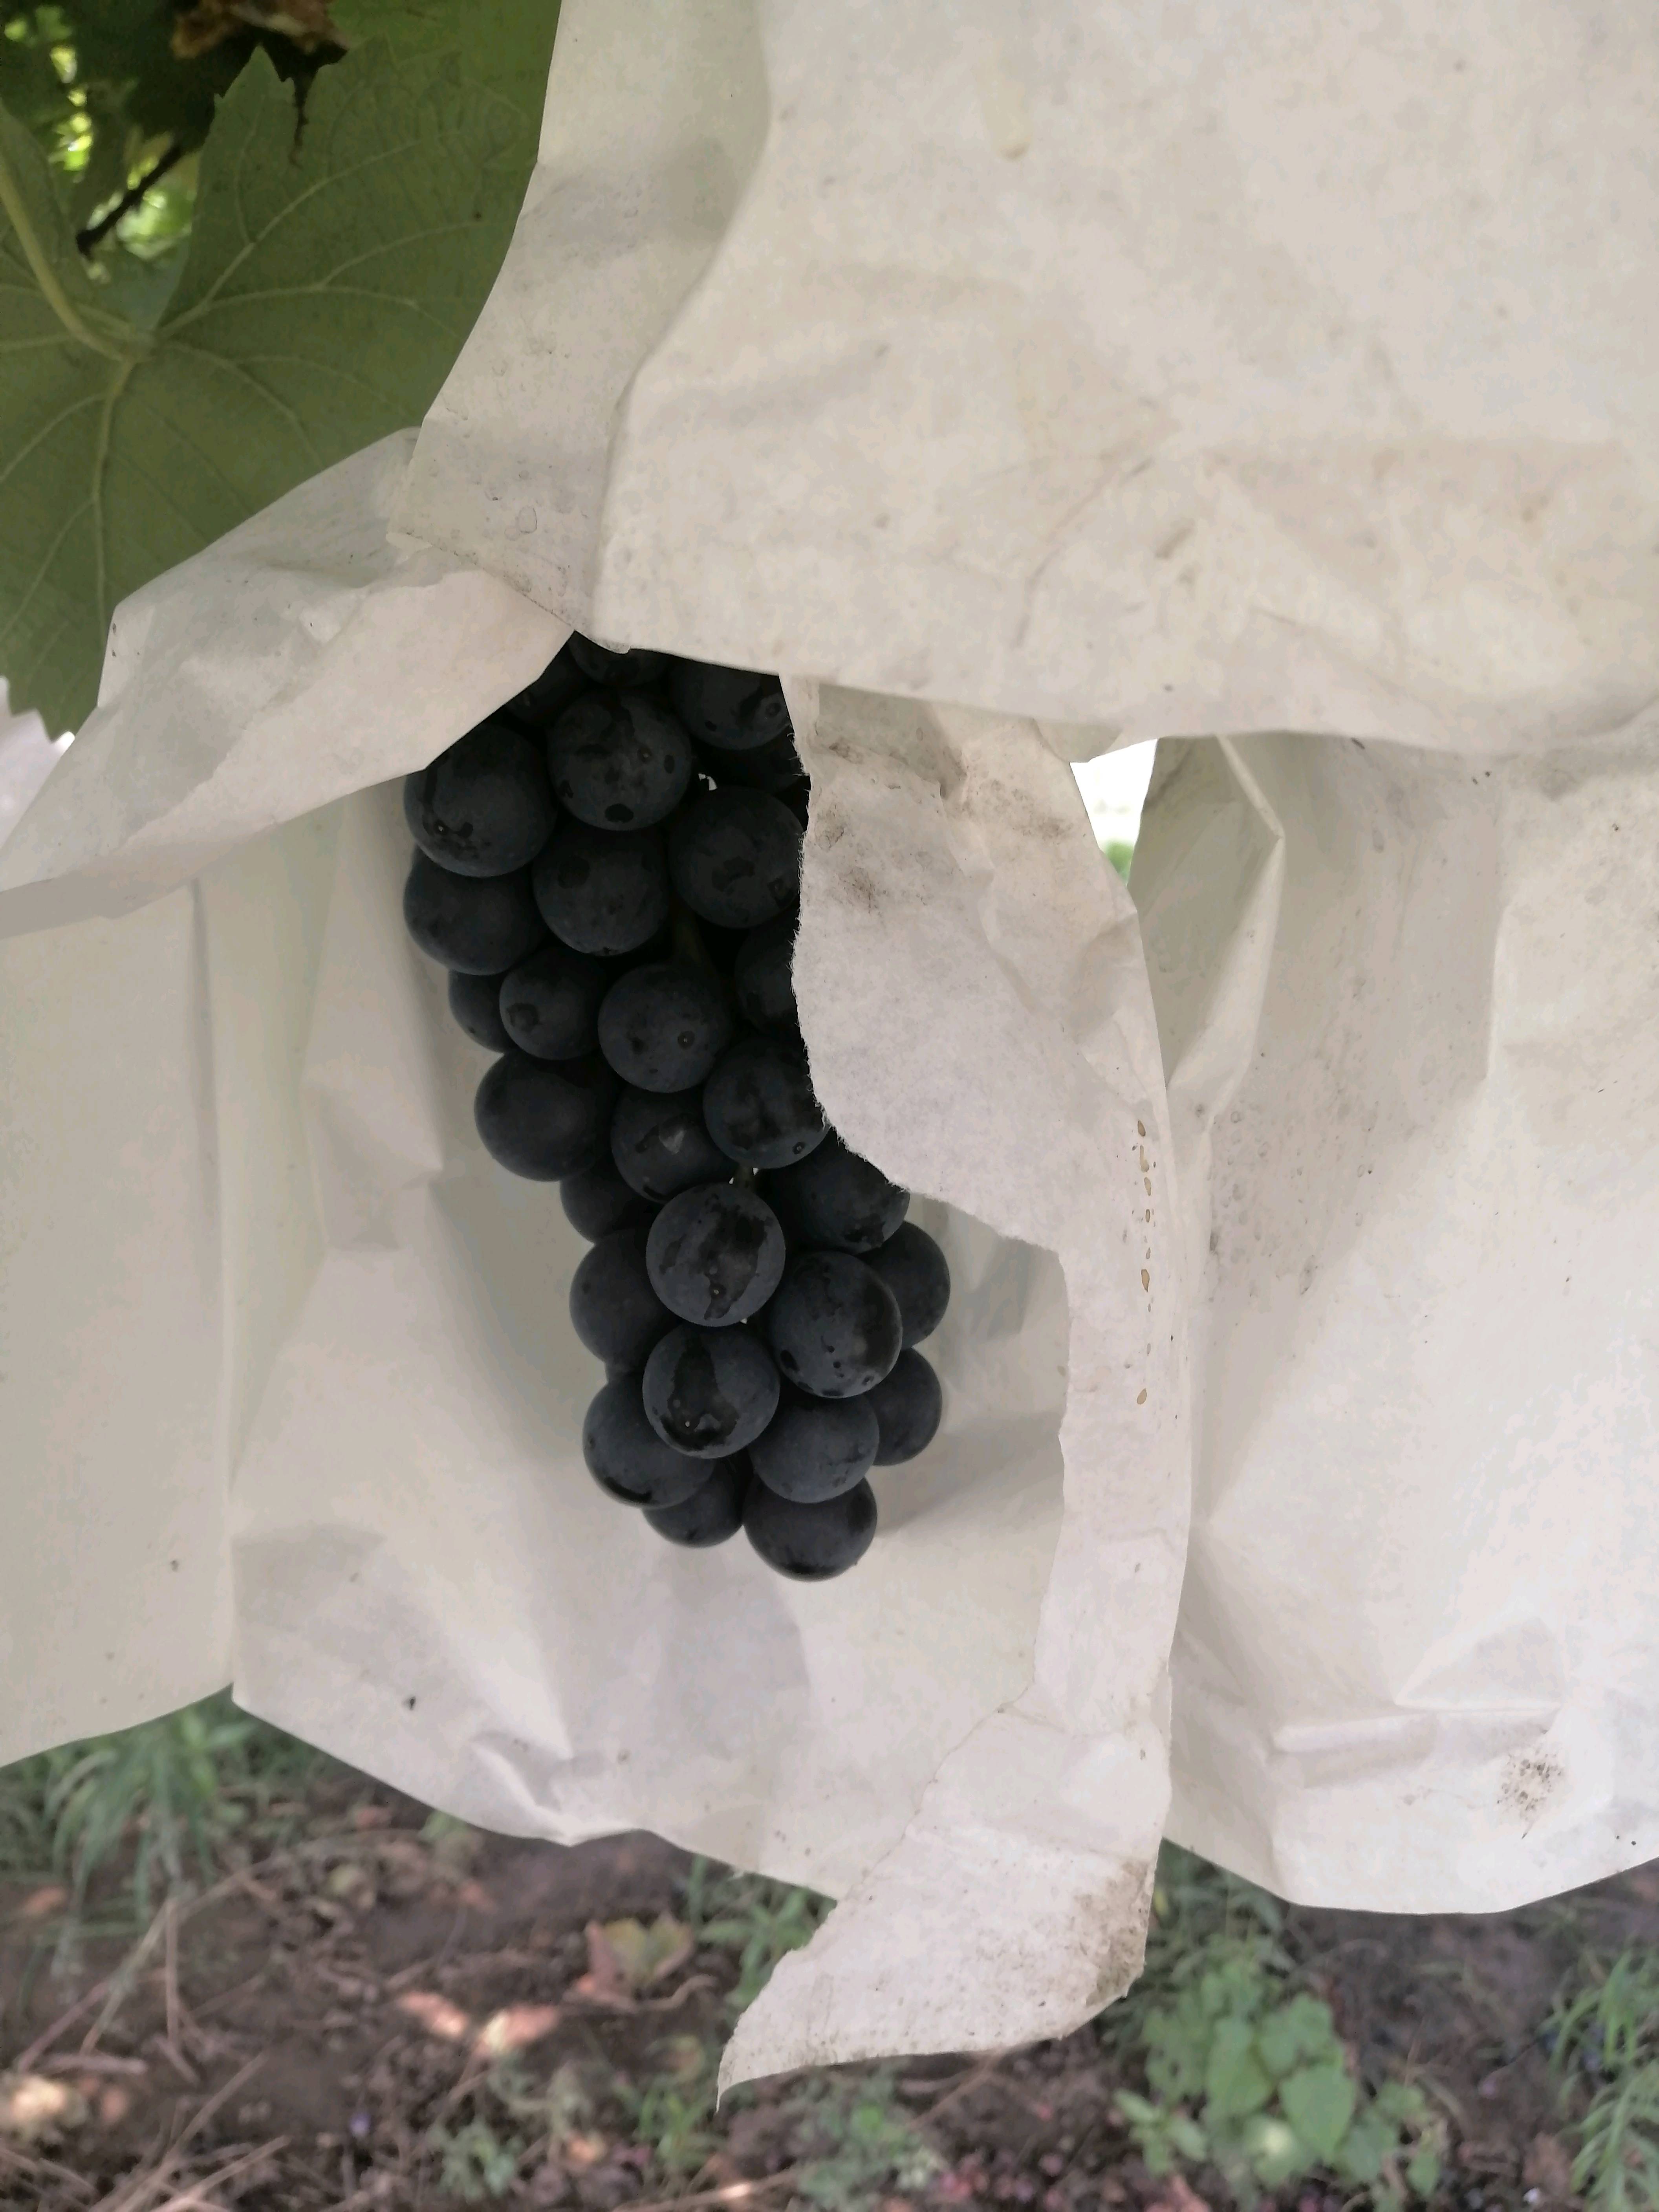 夏黑葡萄，农场自产自销，避雨套袋栽培，颜色好甜度高